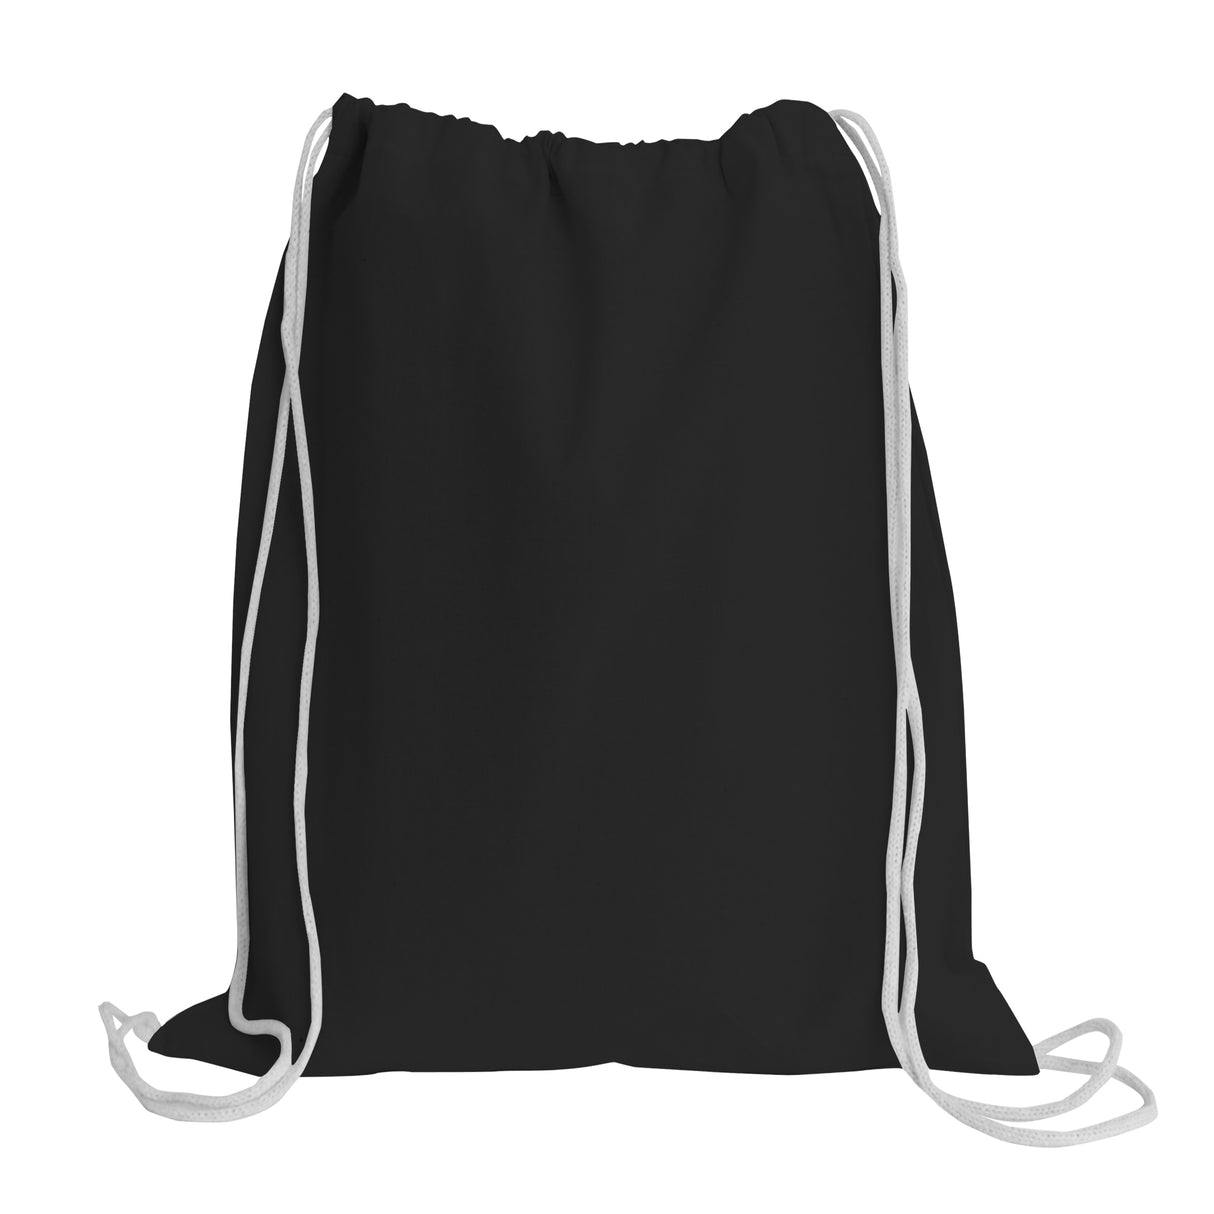 Economical Sport Cotton Drawstring Bag Cinch Packs,cheap canvas bags